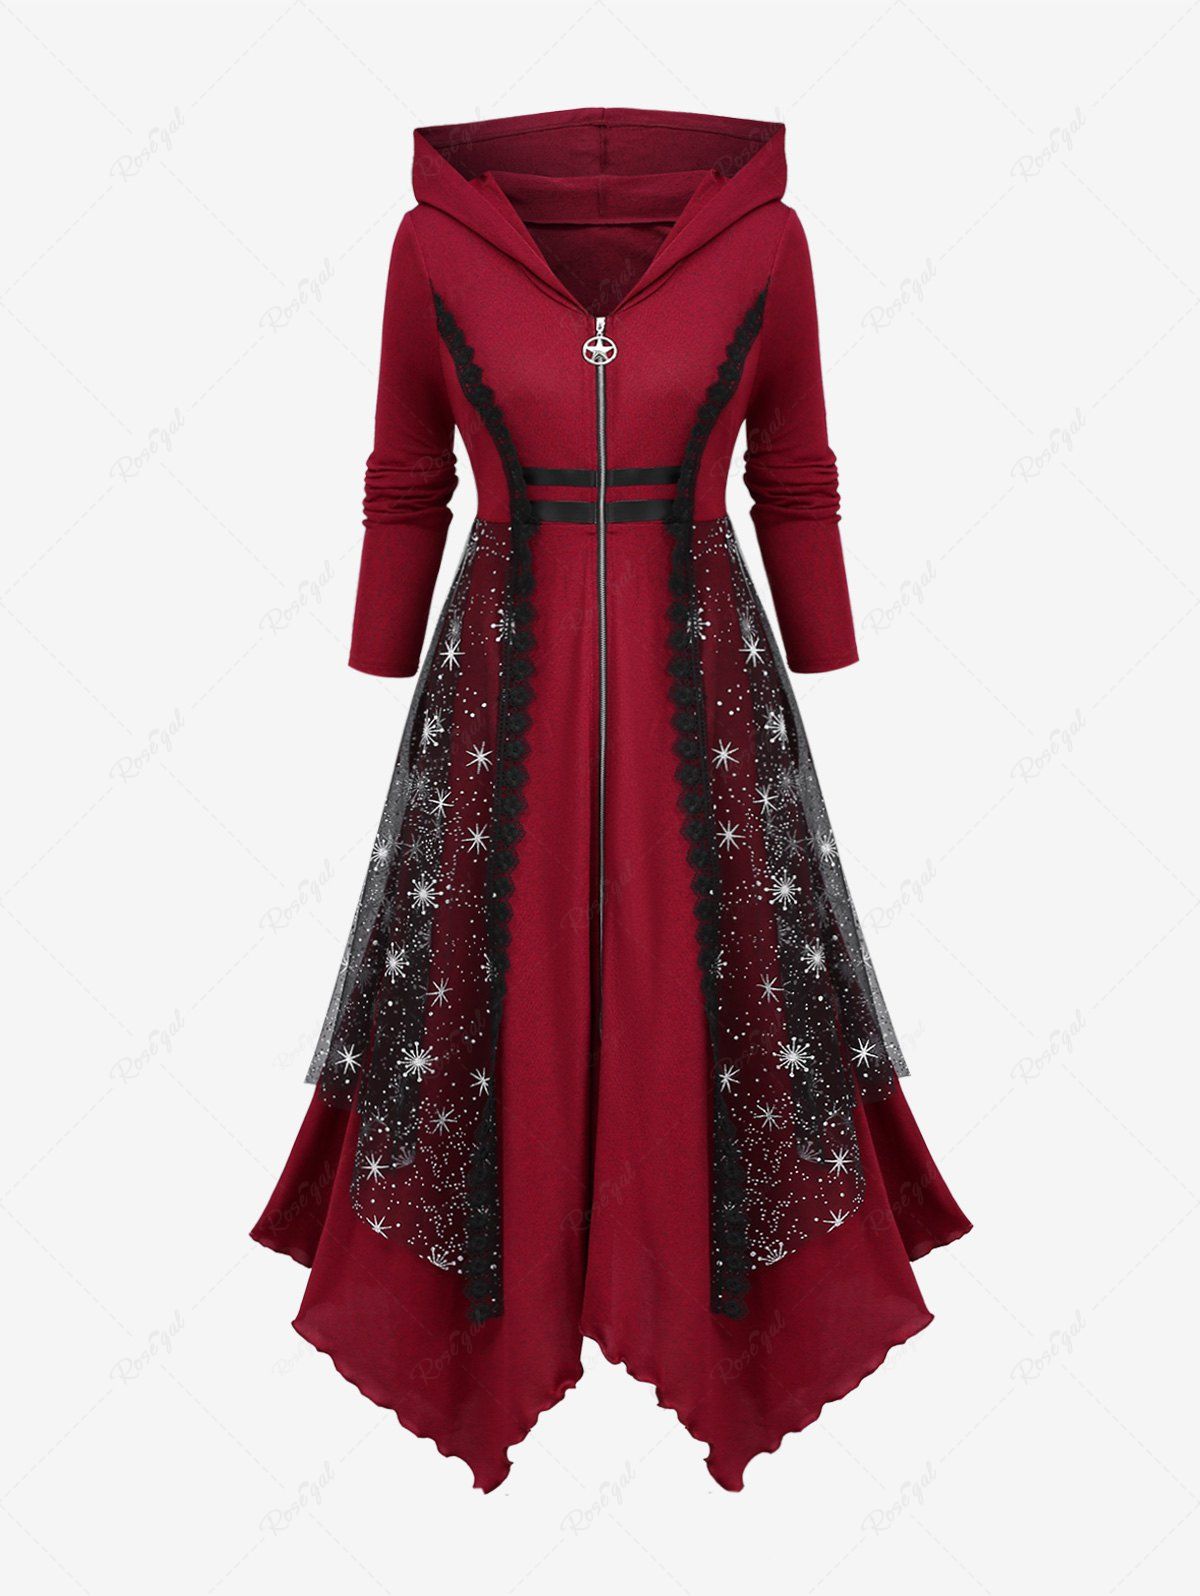 Plus Size Mesh Layered Lace Trim Handkerchief Zipper Hooded Coat Rouge foncé 4X | US 26-28